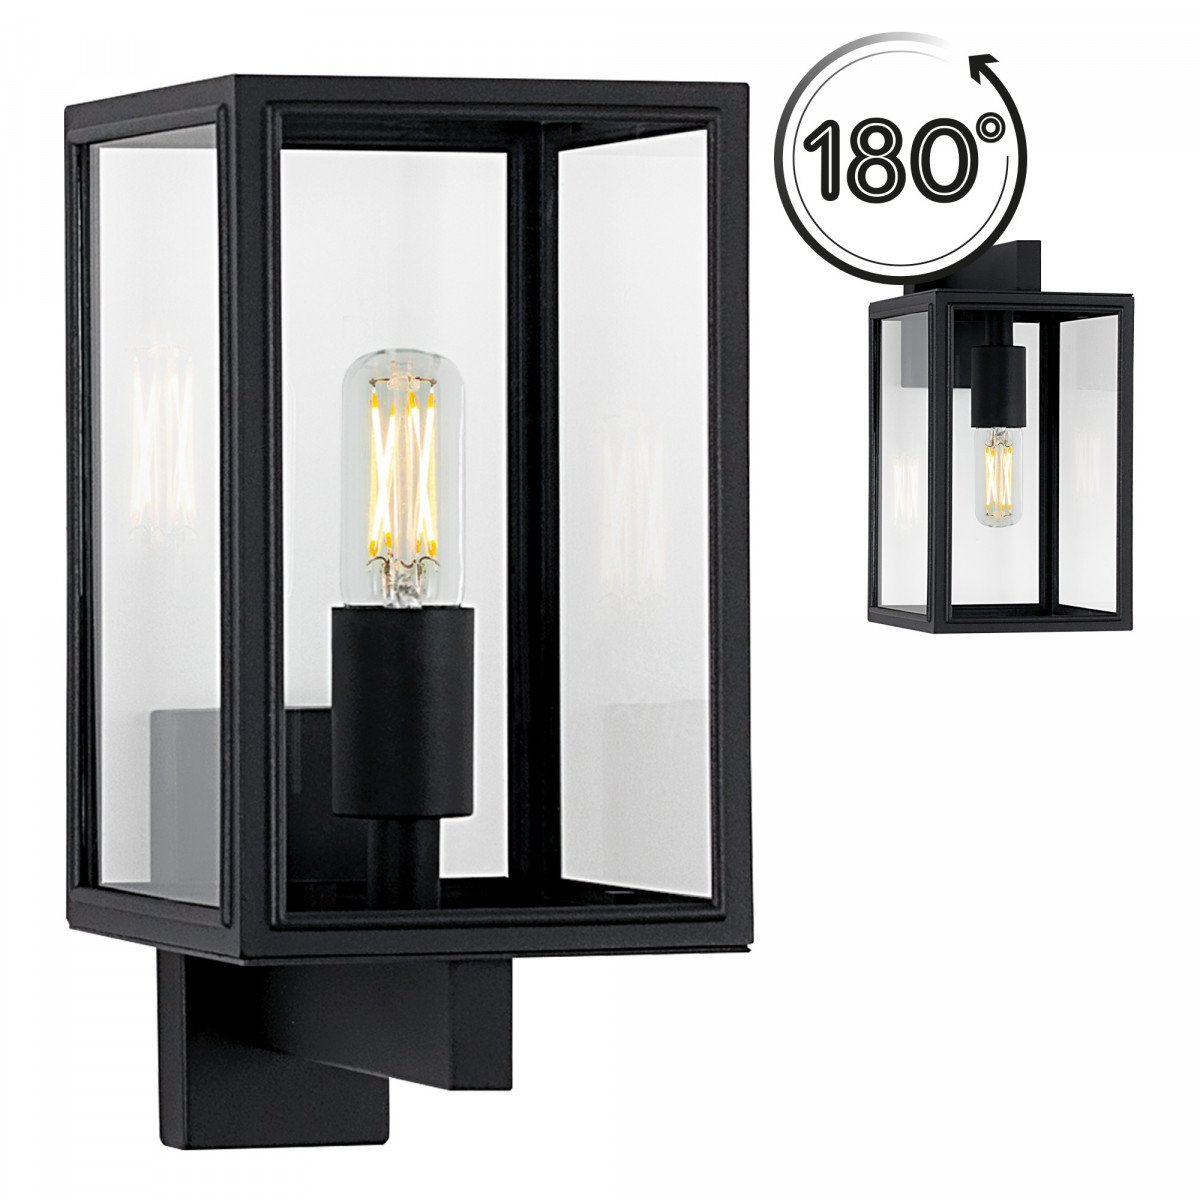 Lampe d'extérieur noire moderne avec verre clair pour éclairage mural extérieur